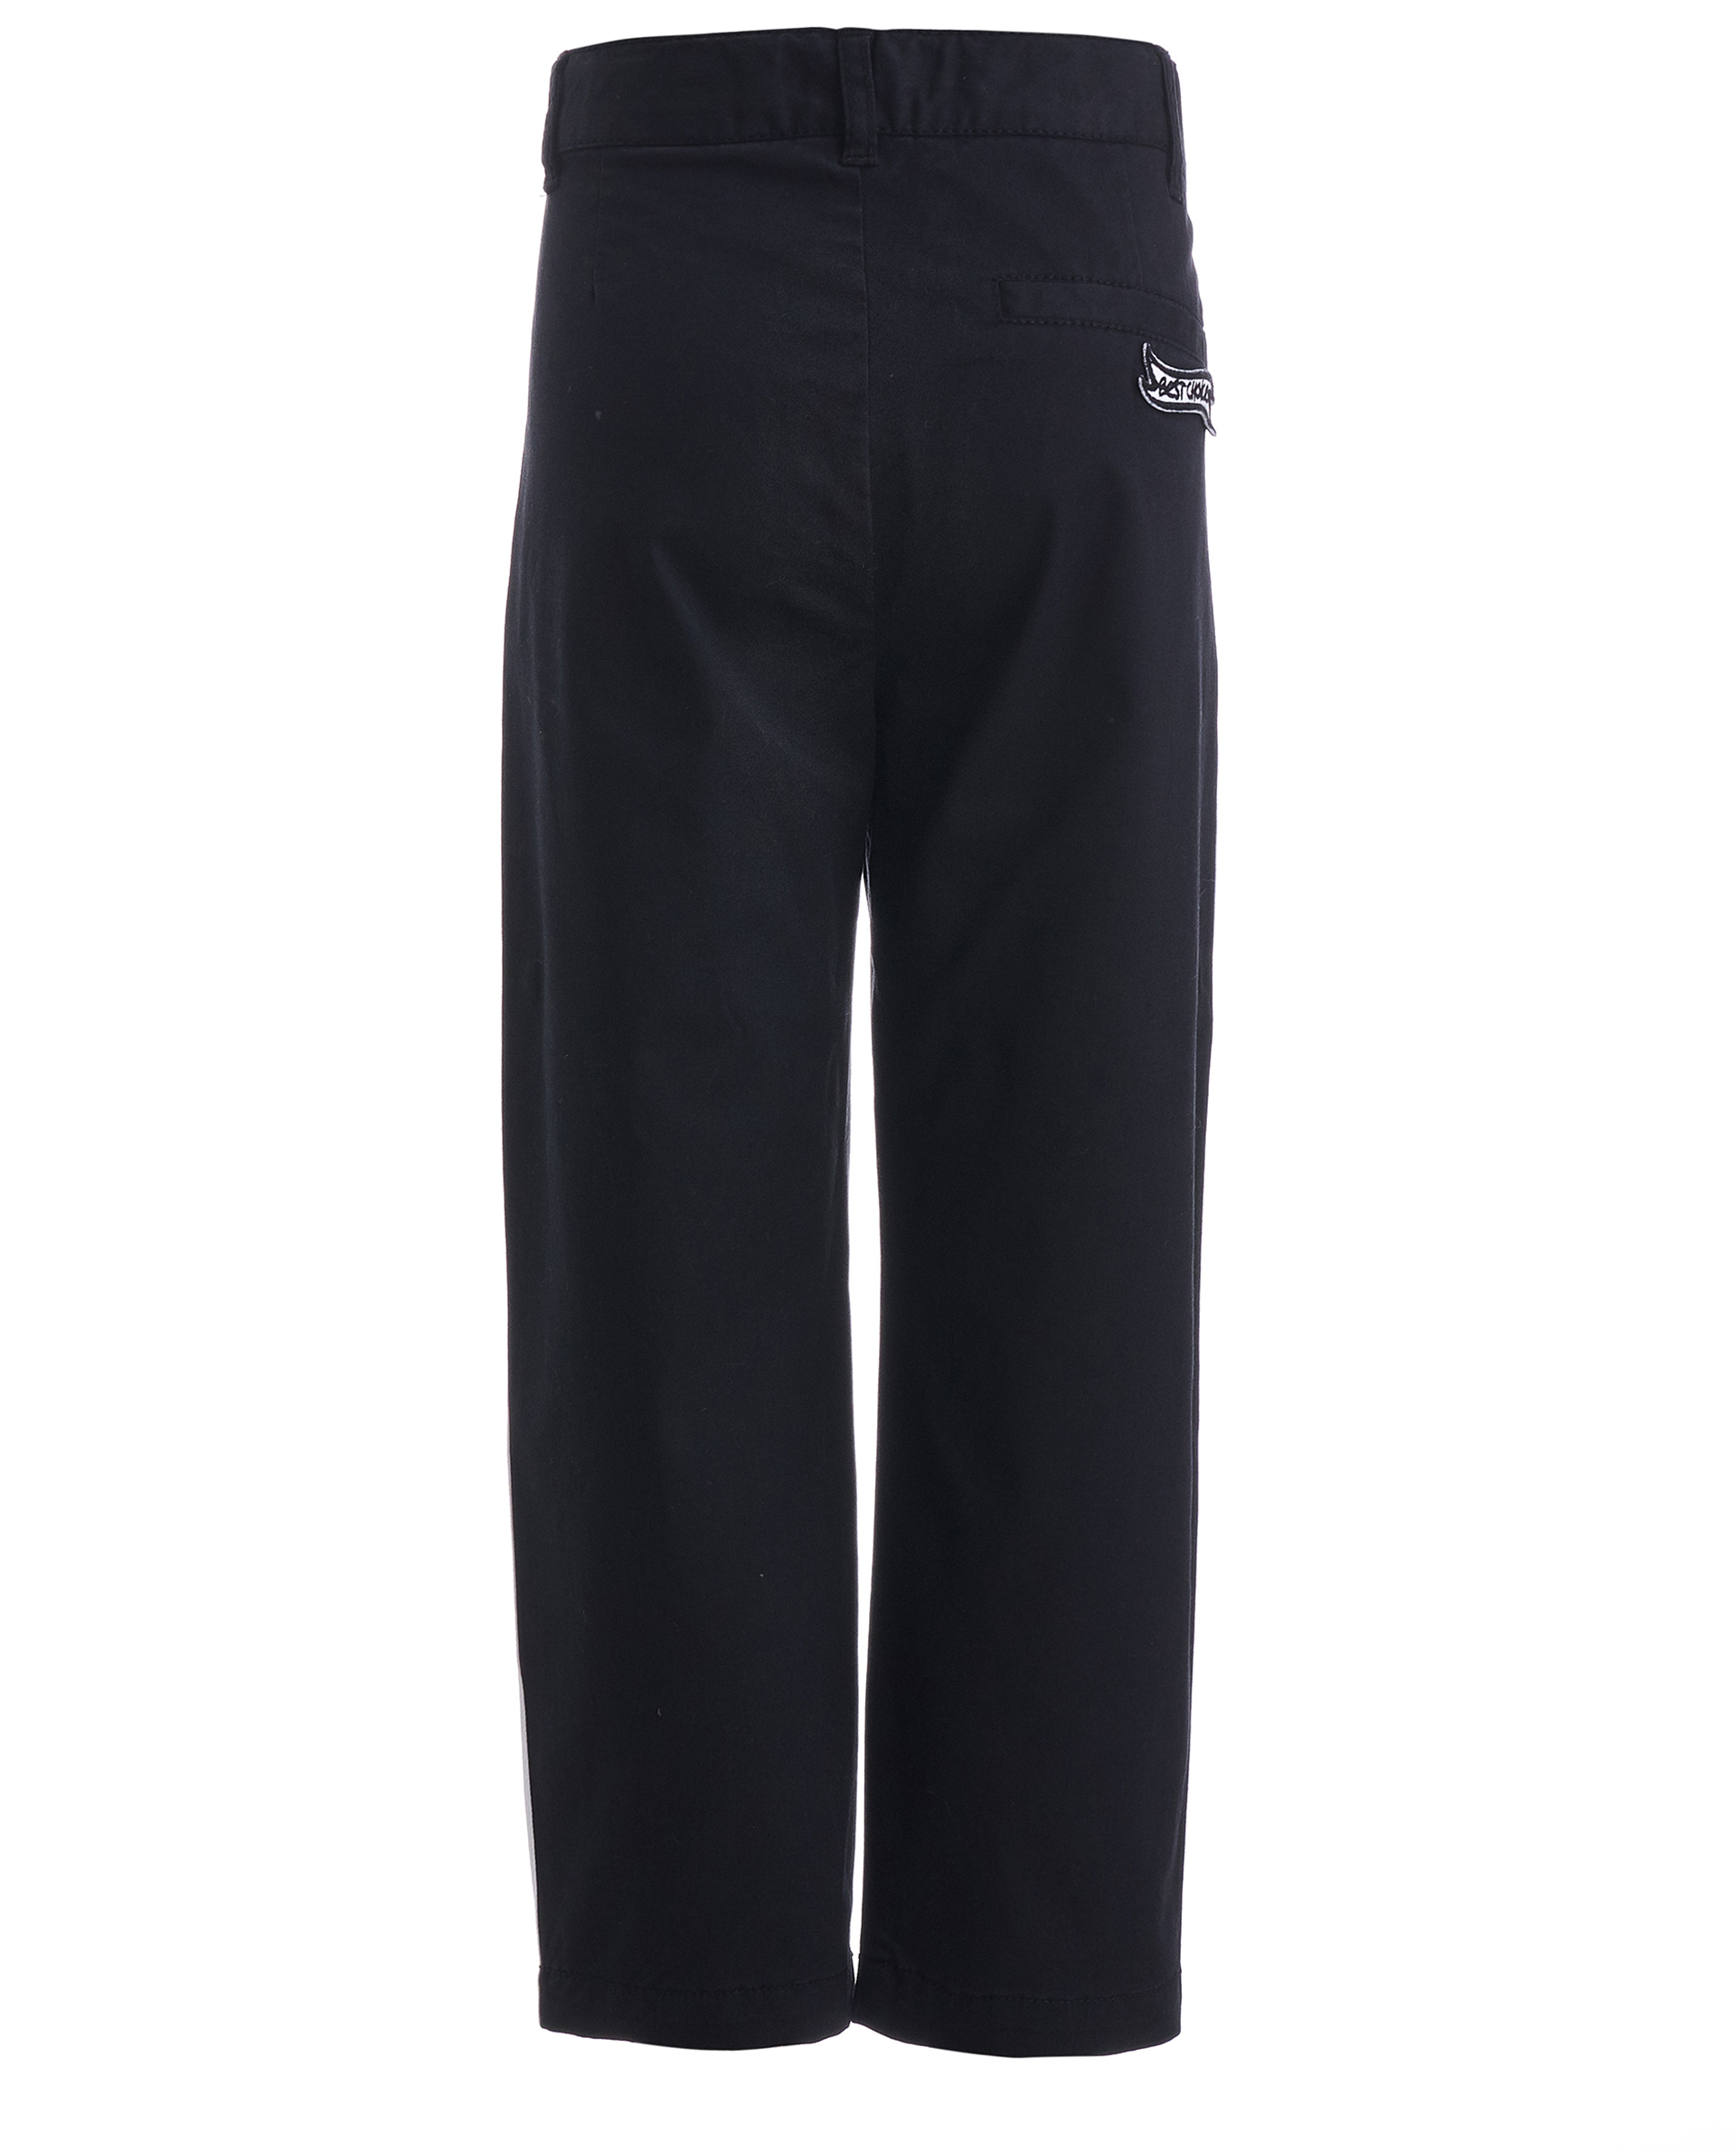 Черные брюки с лампасами Gulliver 11905BMC6301, размер 104, цвет черный - фото 2